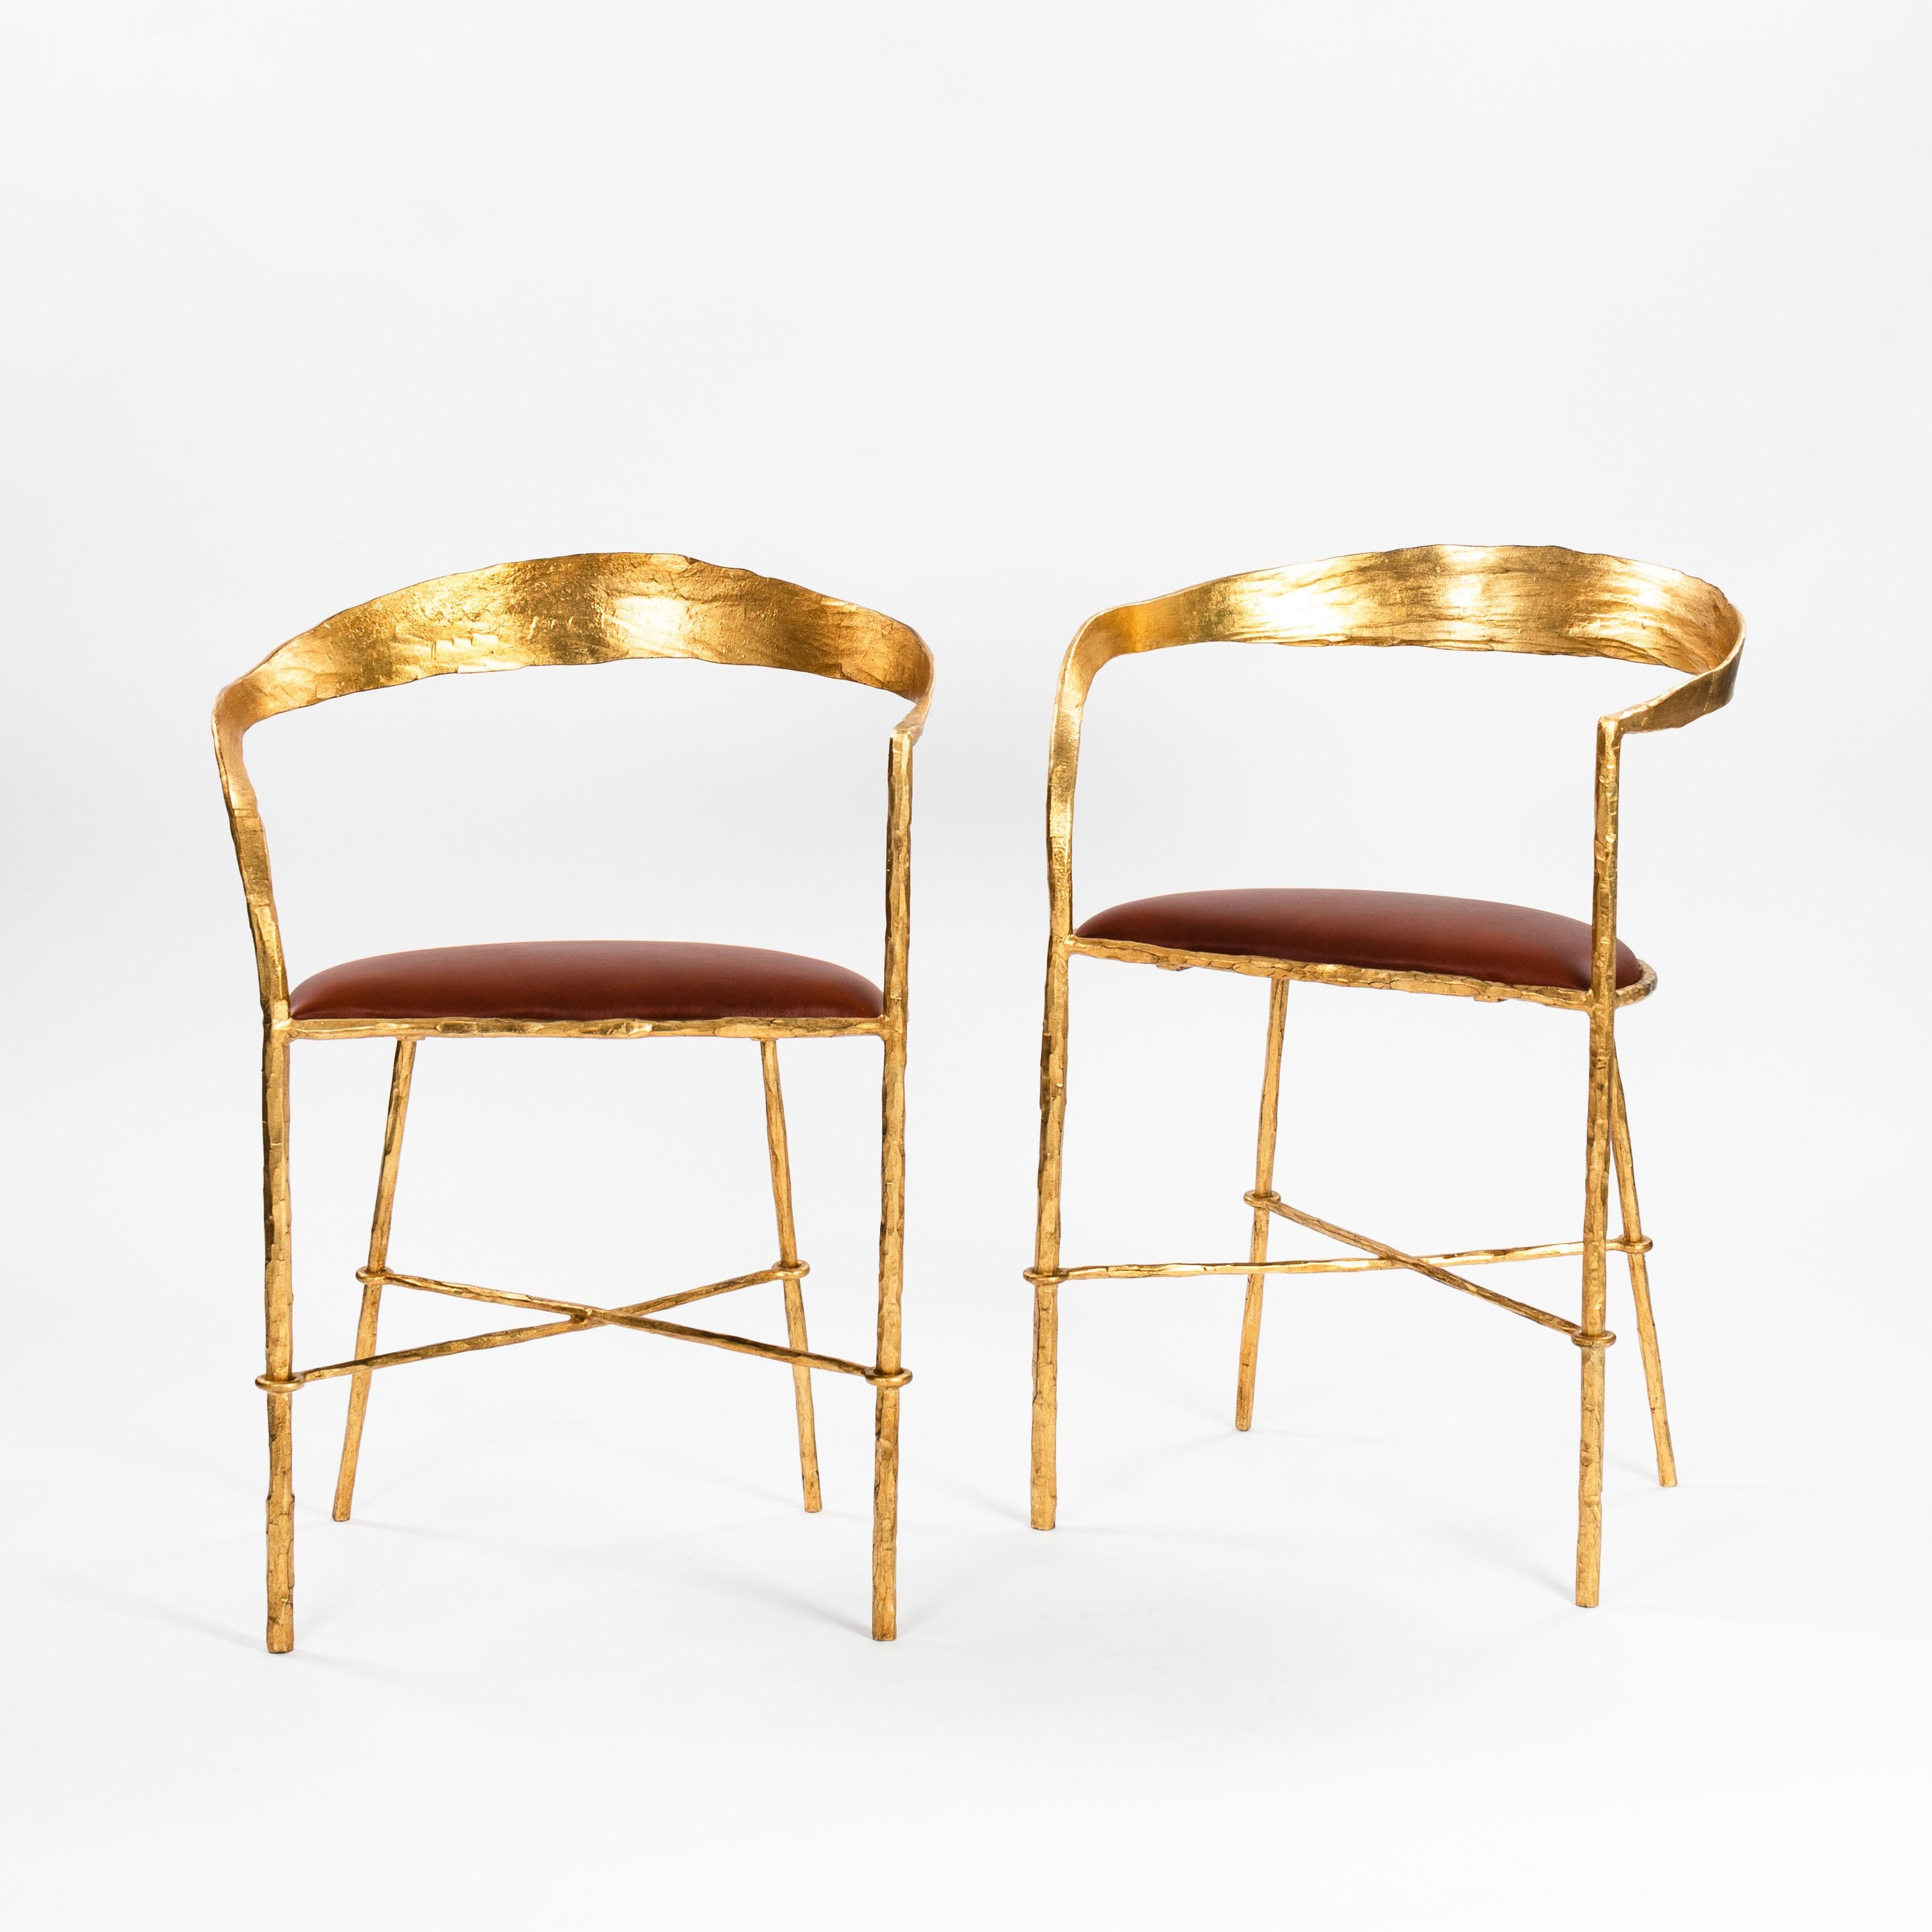 Paar handgeschmiedete vergoldete Stühle aus der Mitte des Jahrhunderts von Banci Florenz 1970er Jahre

Die Stühle sind von zarter Struktur, aber sehr schwer.
Eine Armlehne ist gebogen, die andere geht gerade in die Rückenlehne über. 
Der Rahmen ist